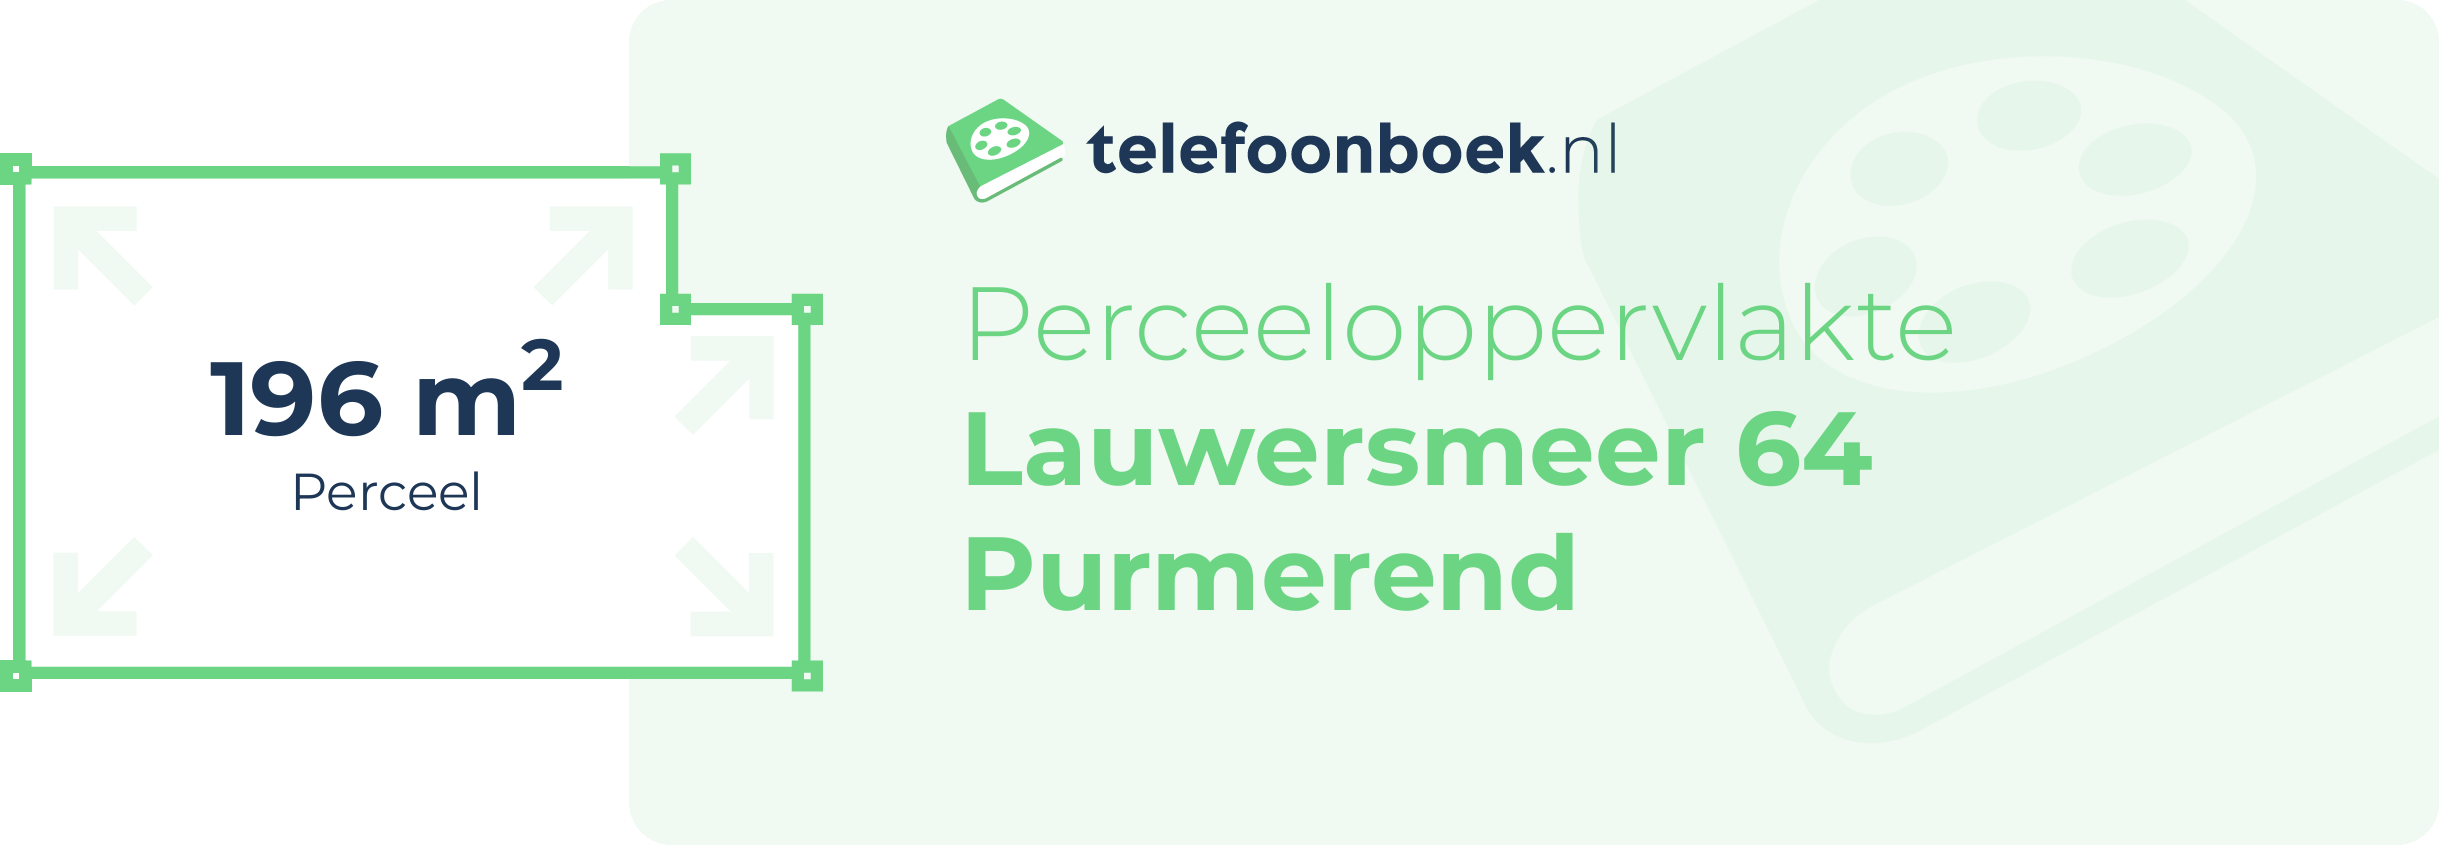 Perceeloppervlakte Lauwersmeer 64 Purmerend